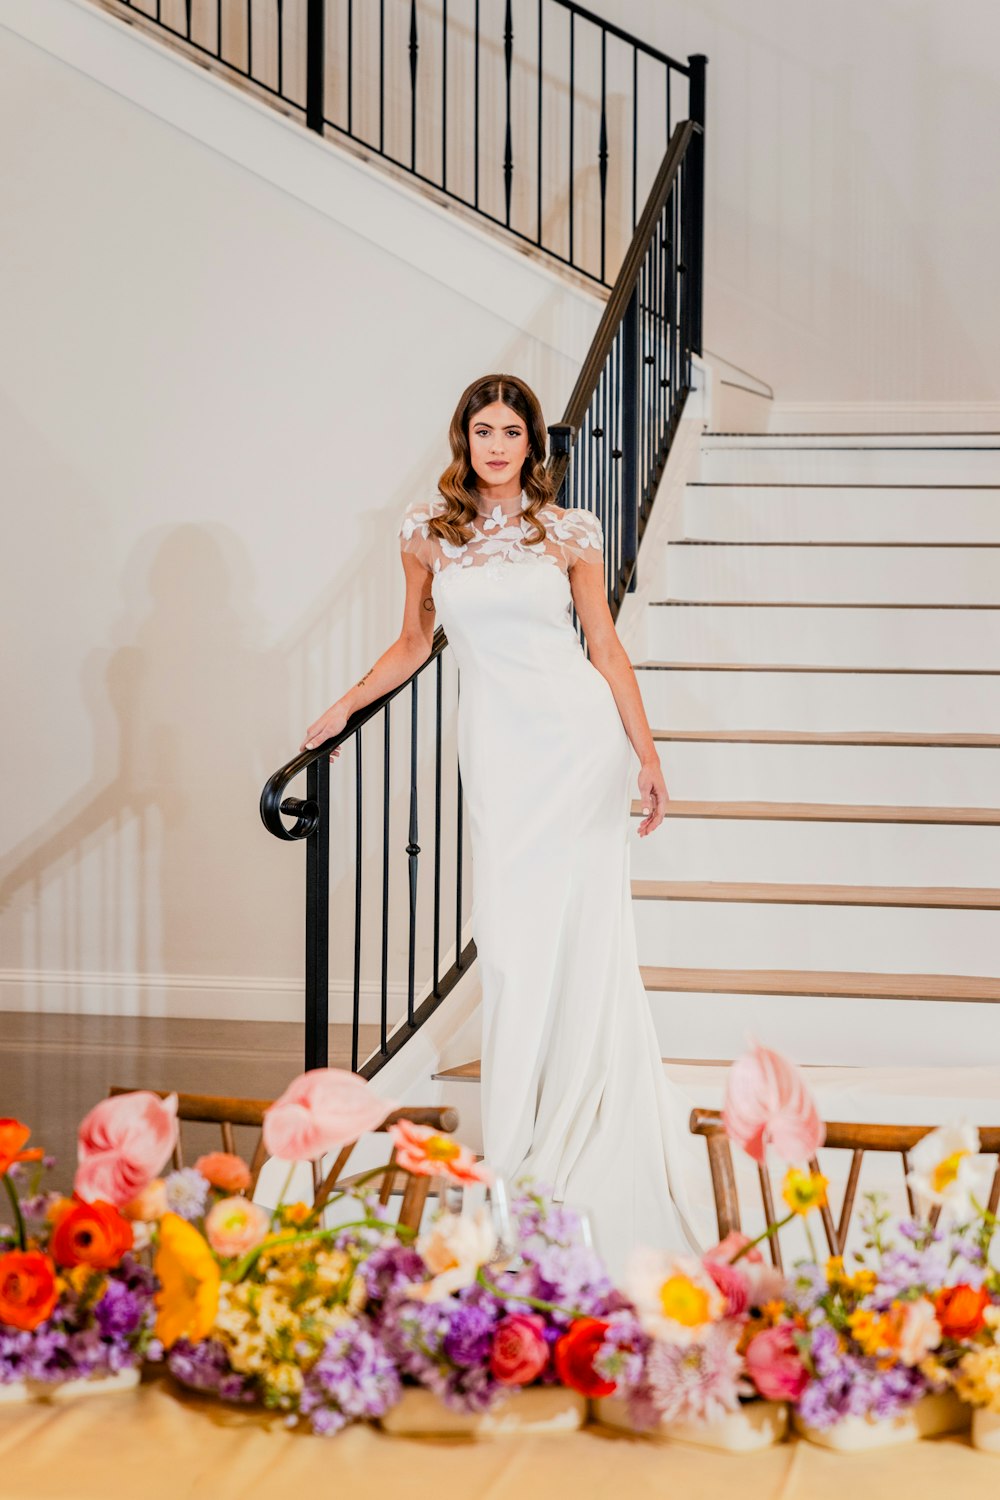 Eine Frau in einem weißen Kleid steht vor einer Treppe